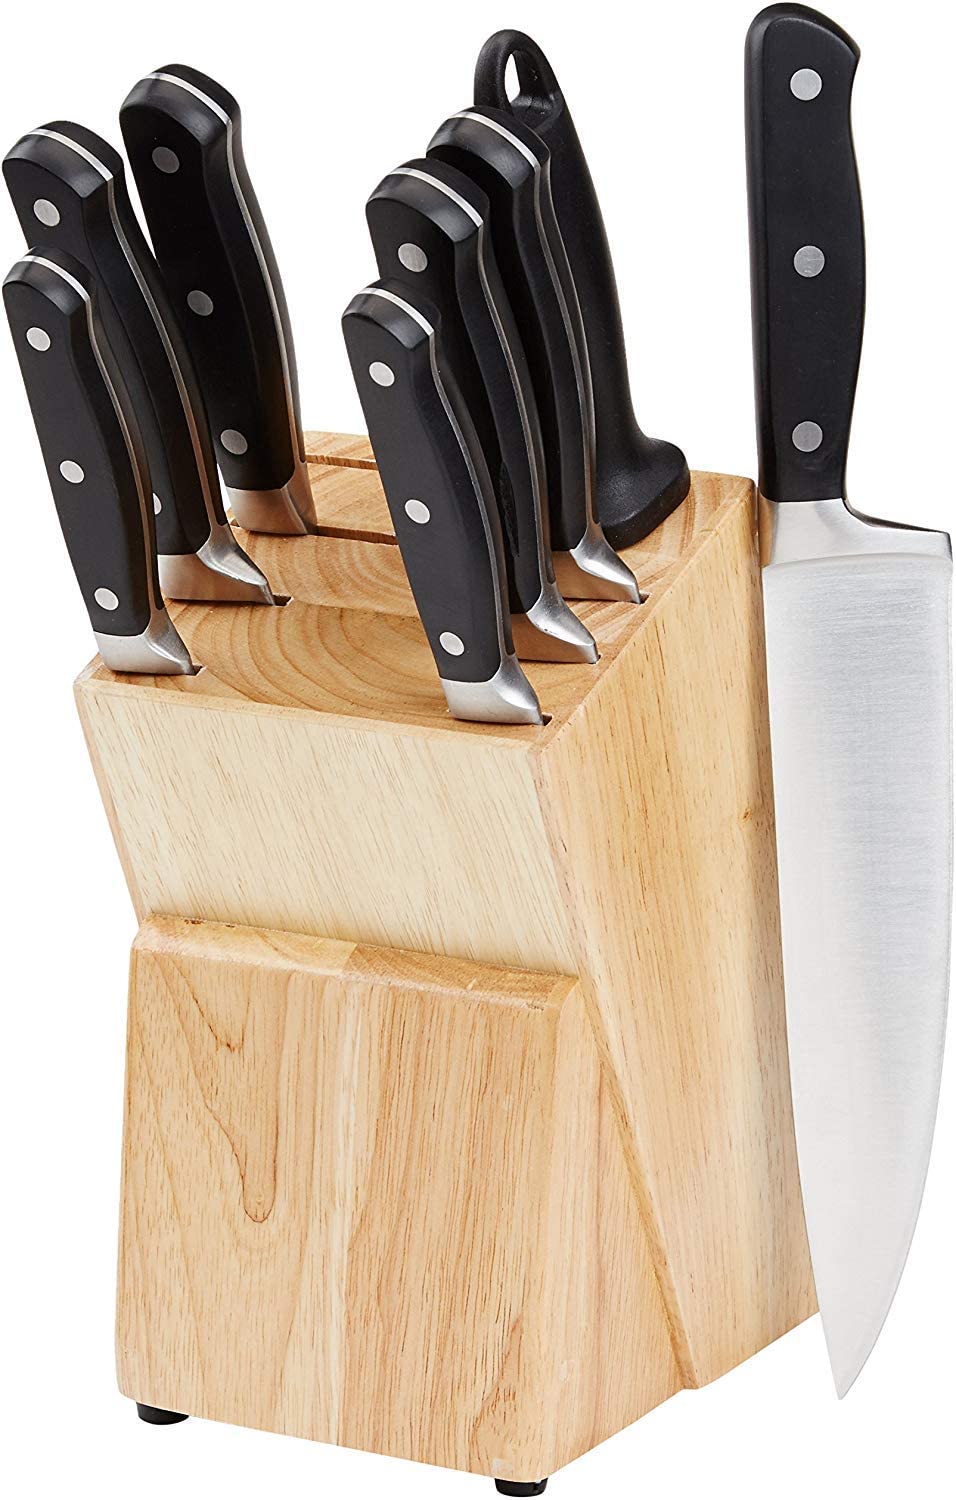 juego-de-cuchillos-de-cocina-amazonbasics-9-piezas.jpg